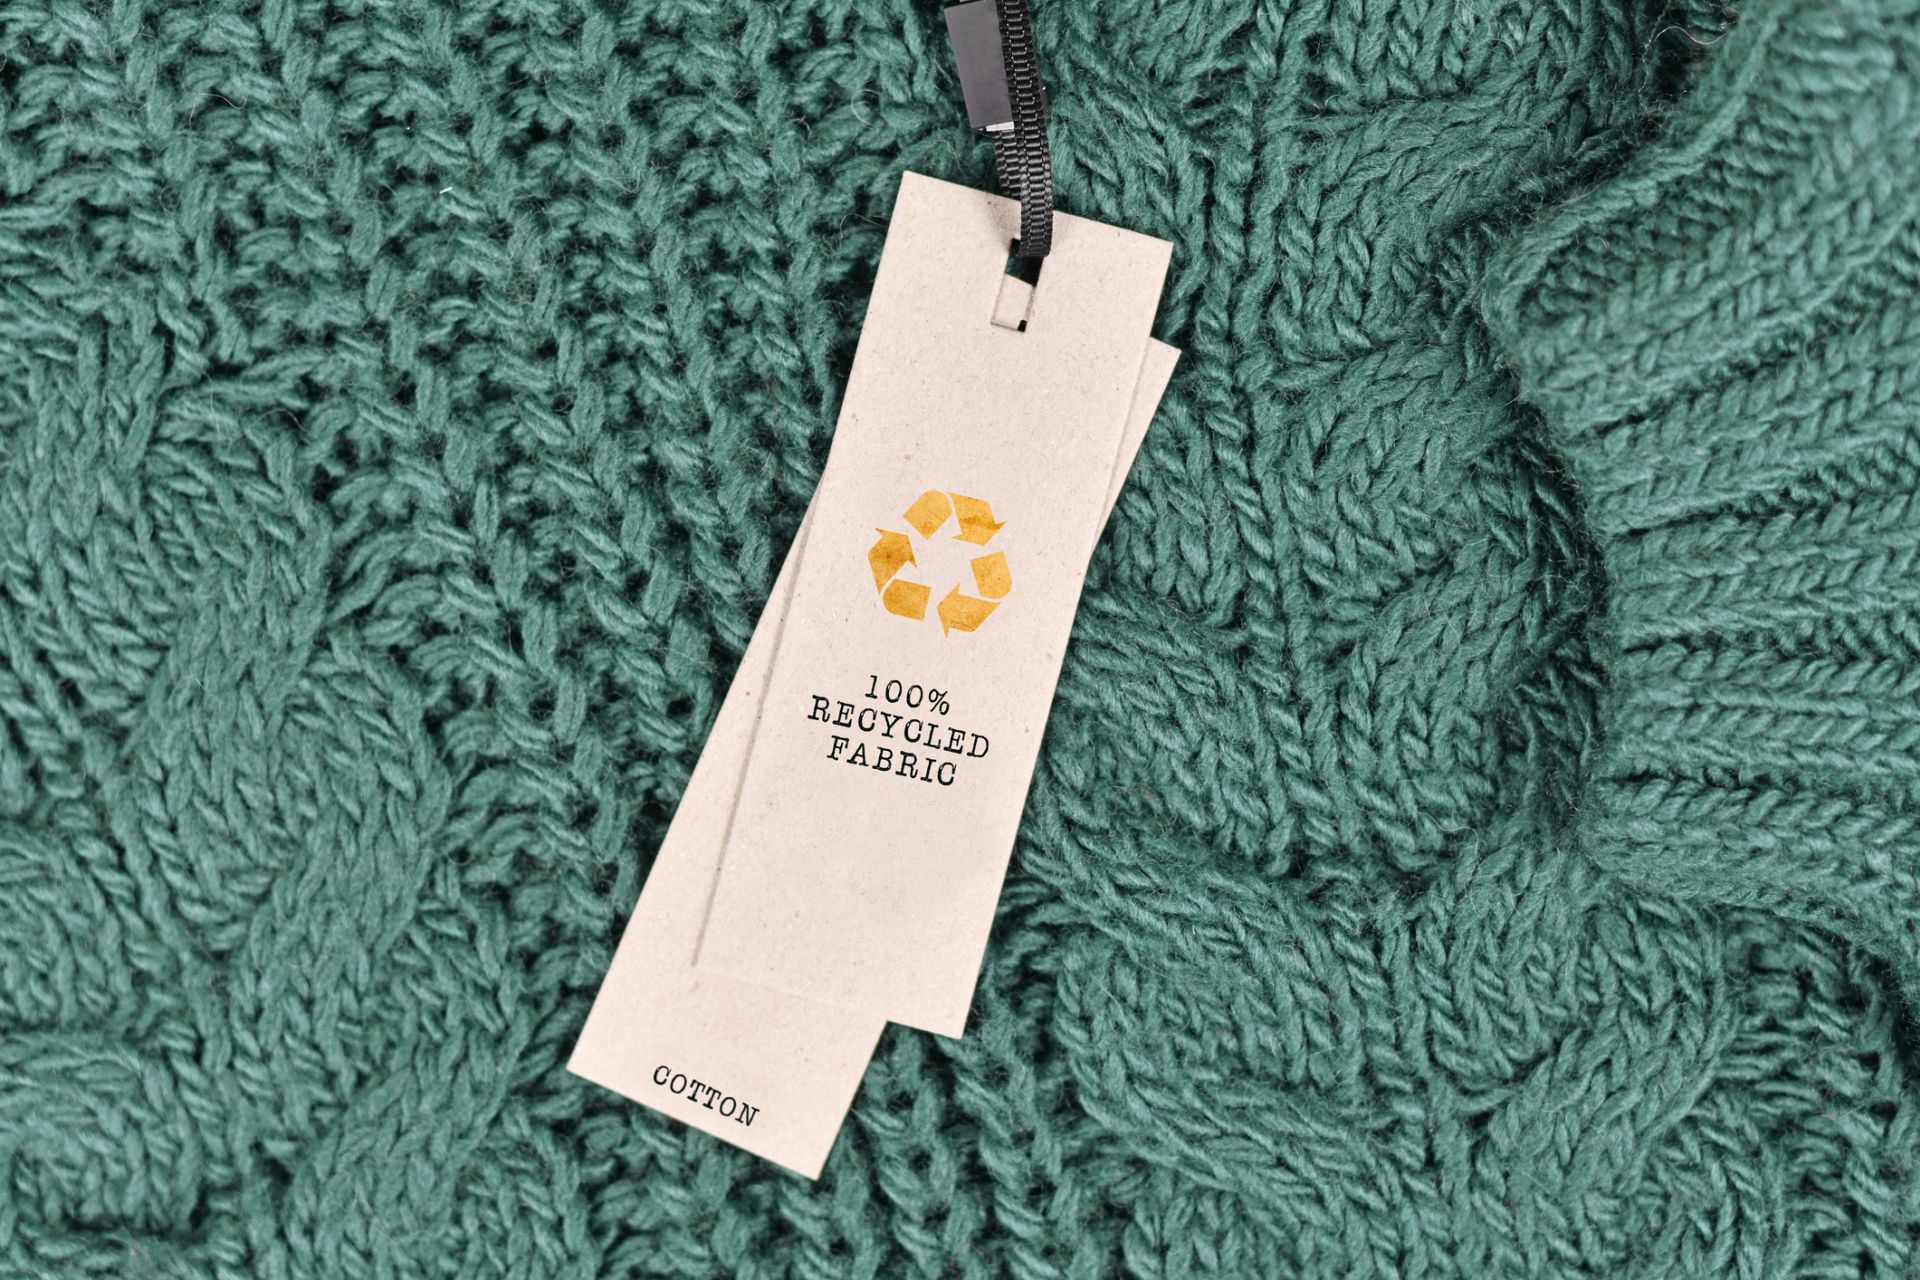 Povinná recyklácia textílií